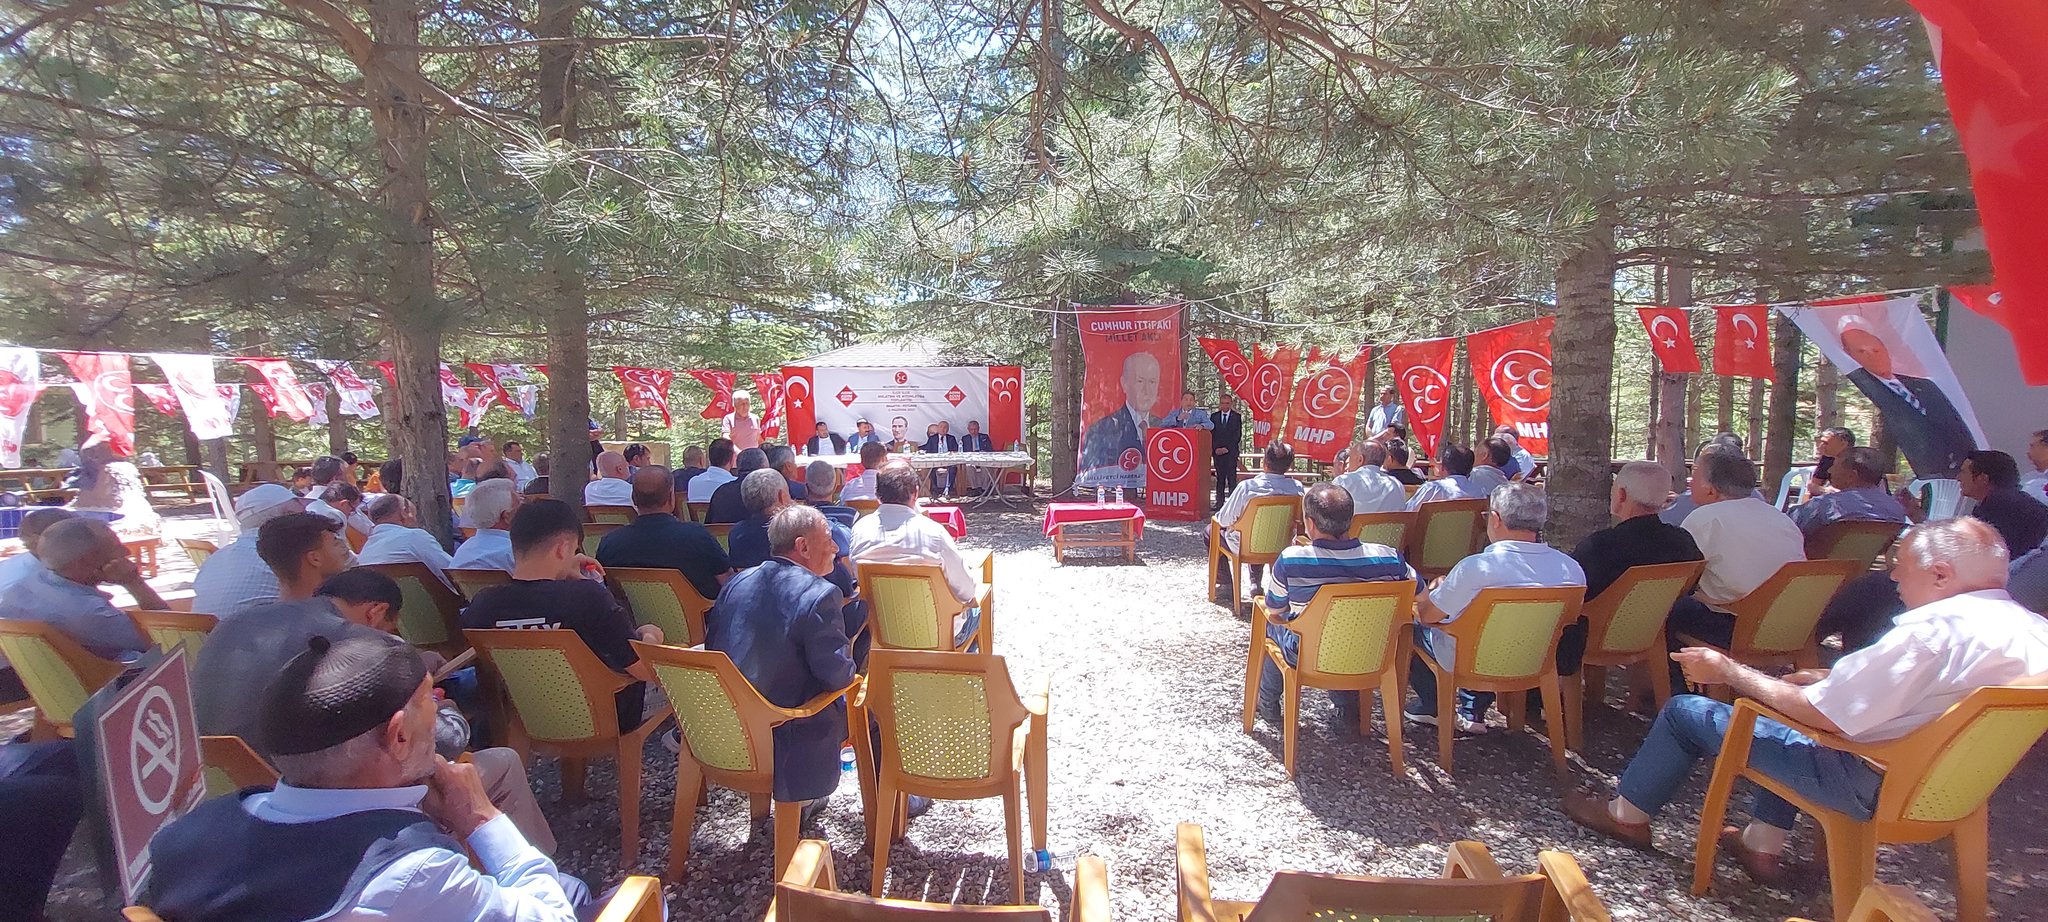 Milliyetçi Hareket Partisi (MHP) İlçe Başkanlığı tarafından 'Adım Adım 2023, İlçe İlçe Anlatma ve Aydınlatma' toplantıları kapsamında 3 günde 11 ilçede etkinlik yapıldı.  